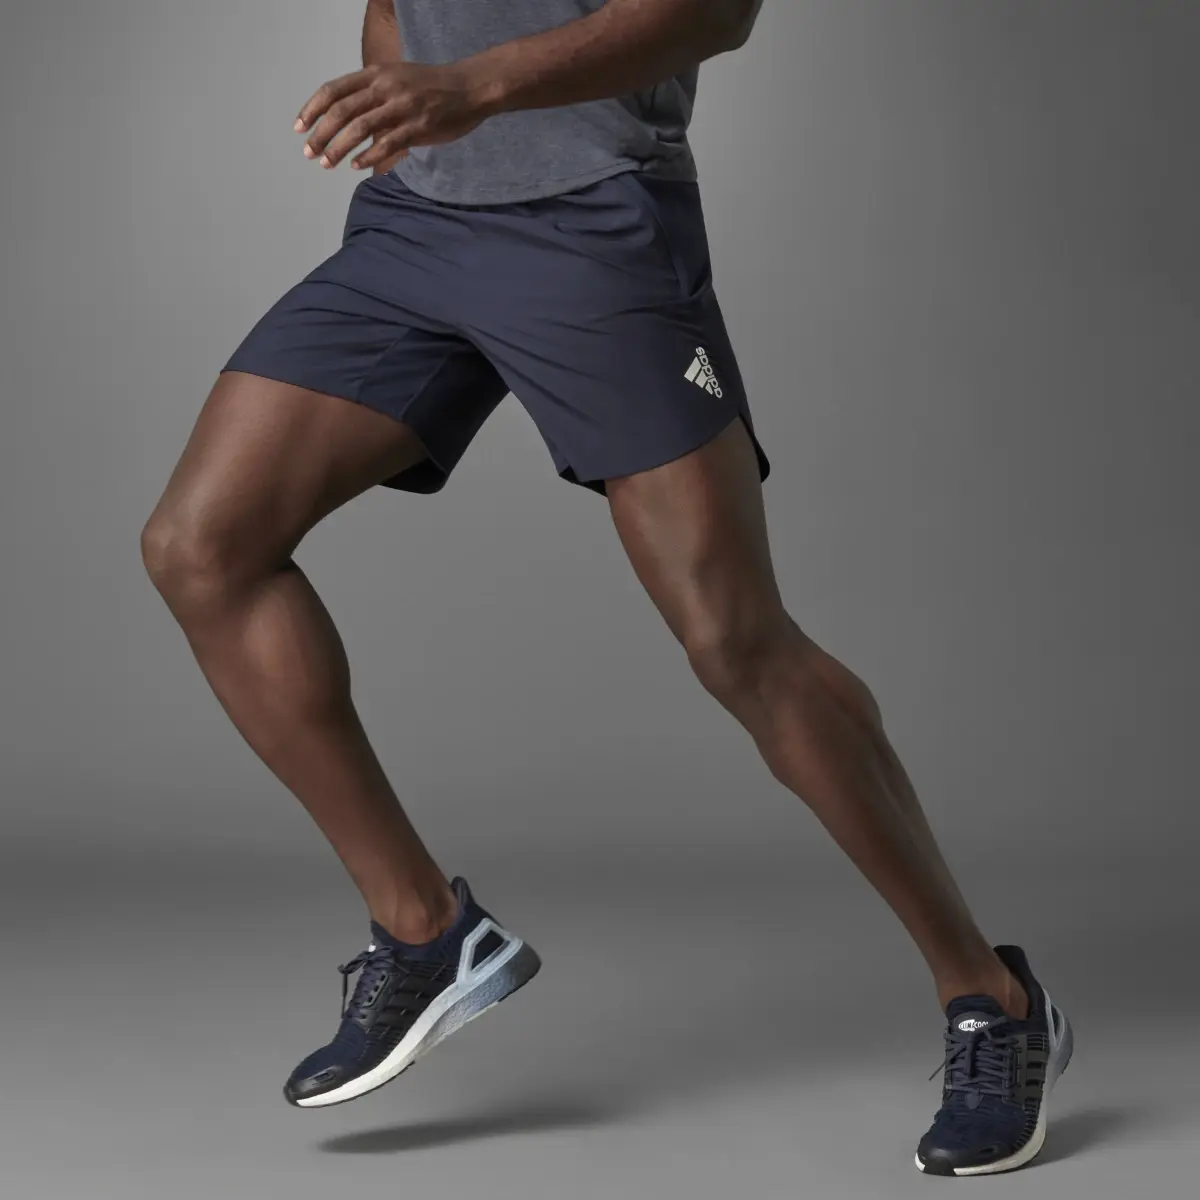 Adidas Designed for Training Shorts. 1